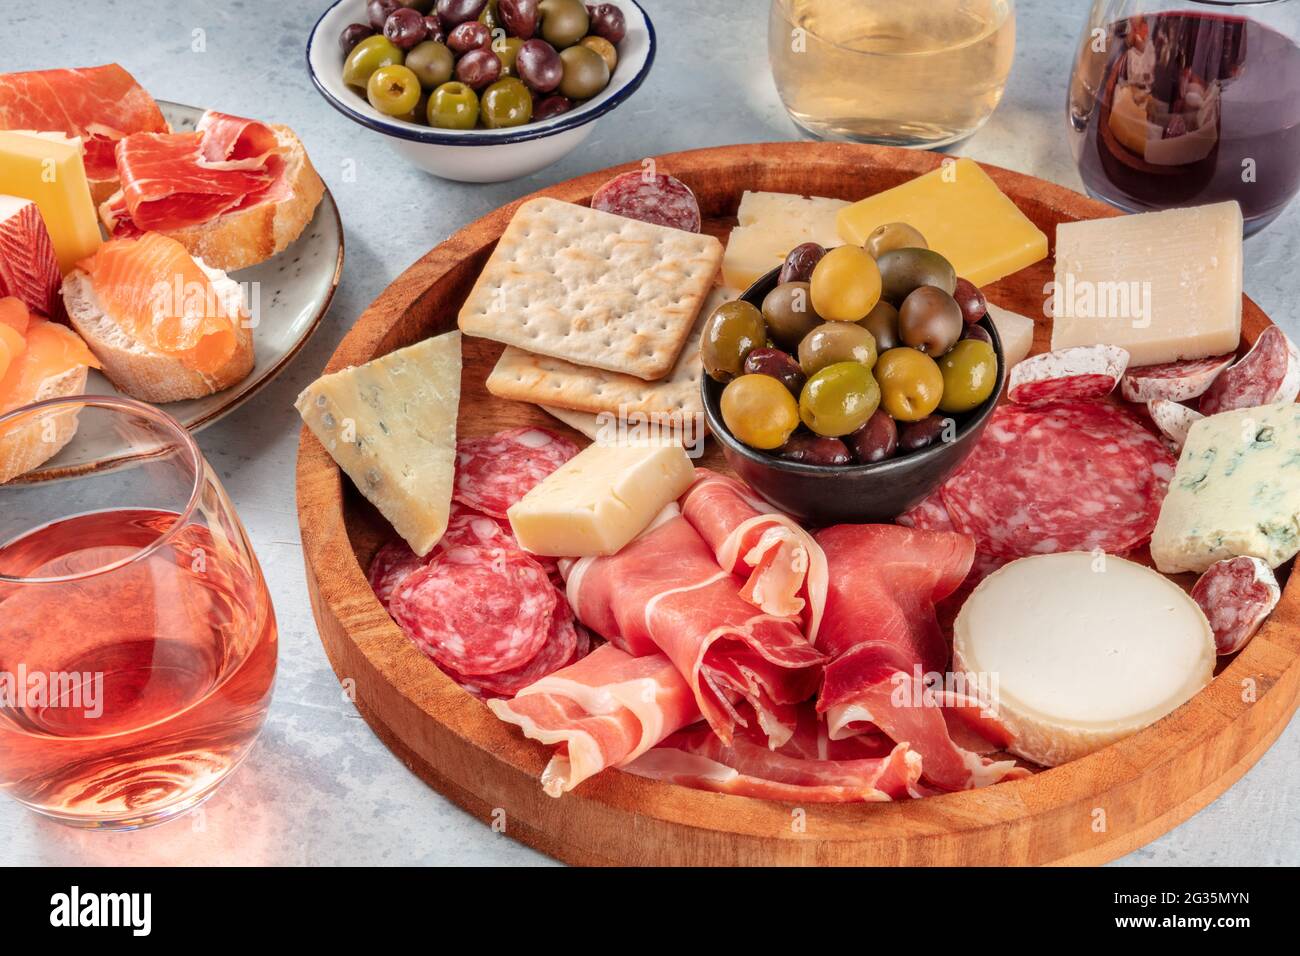 Italienische Antipasti oder spanische Tapas mit Wein. Wurstplatte mit Prosciutto, Jamon, Käse, Salami, Lachs-Sandwiches und Oliven Stockfoto